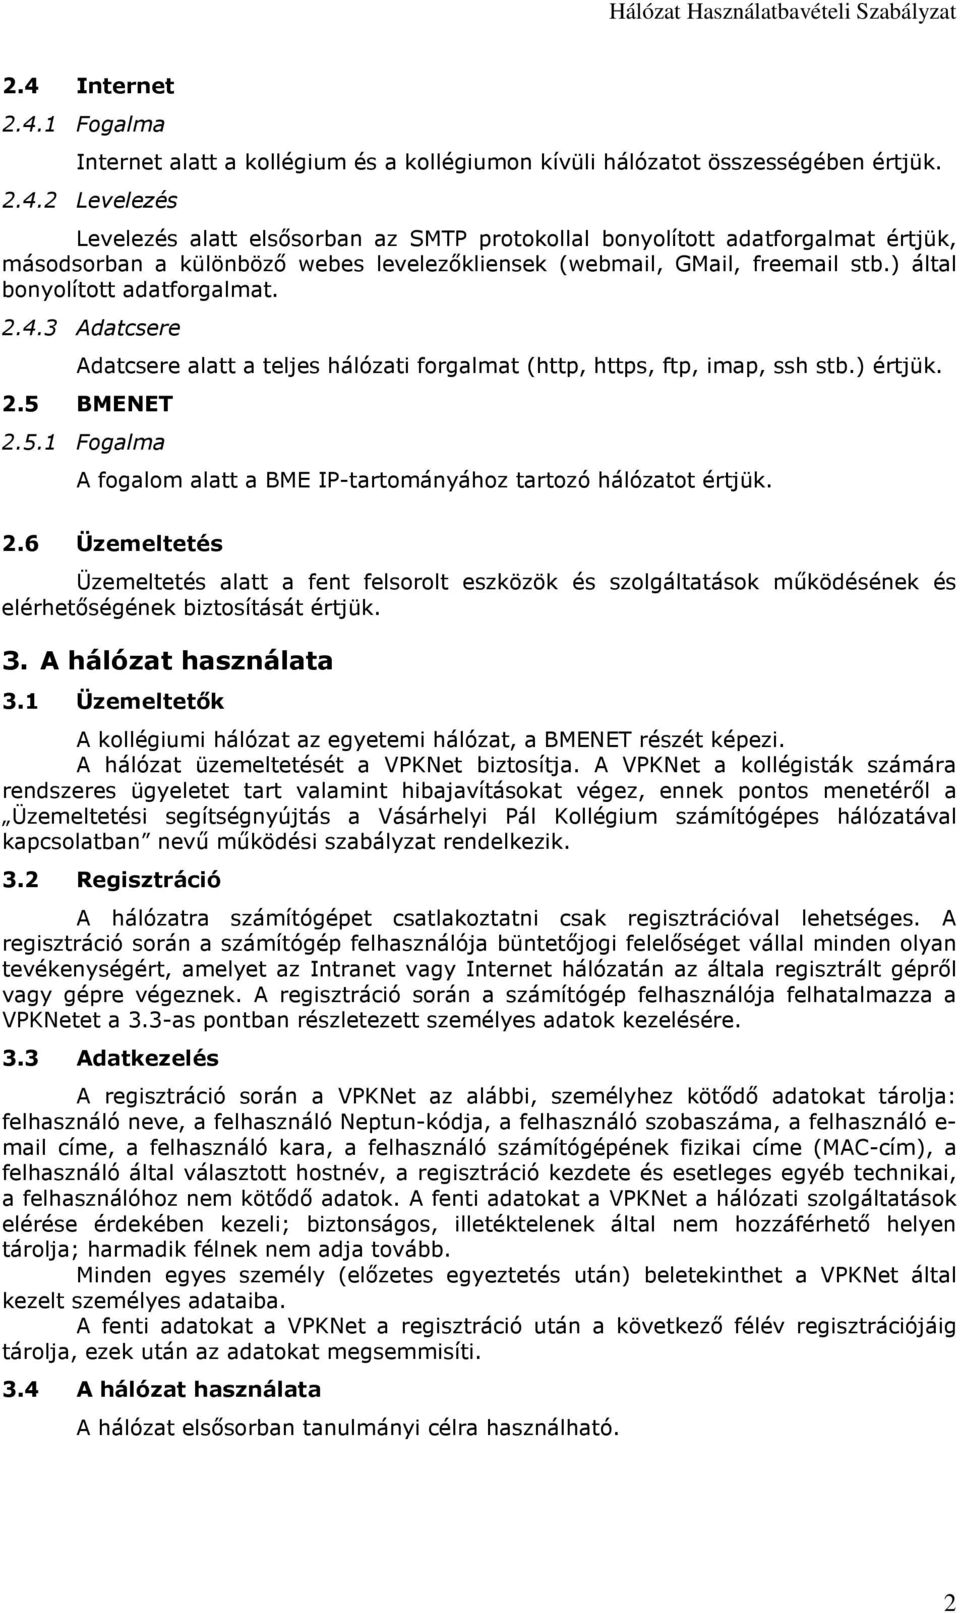 Hálózat Használatbavételi Szabályzat (Vásárhelyi Pál Kollégium) - PDF  Ingyenes letöltés